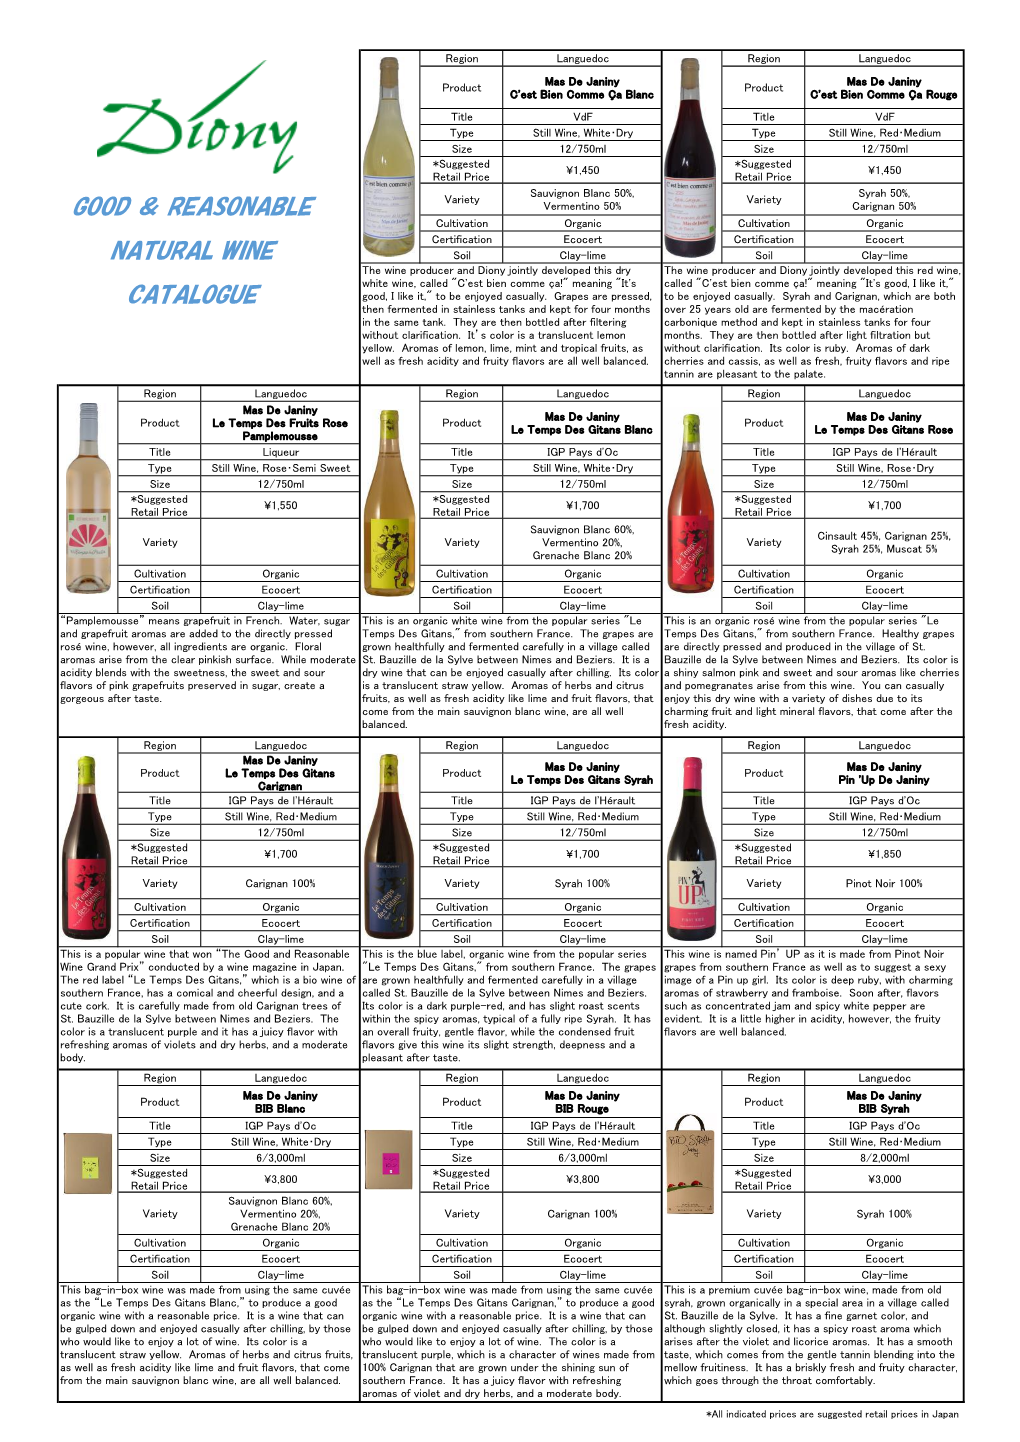 Good ＆ Reasonable Natural Wine Catalogue